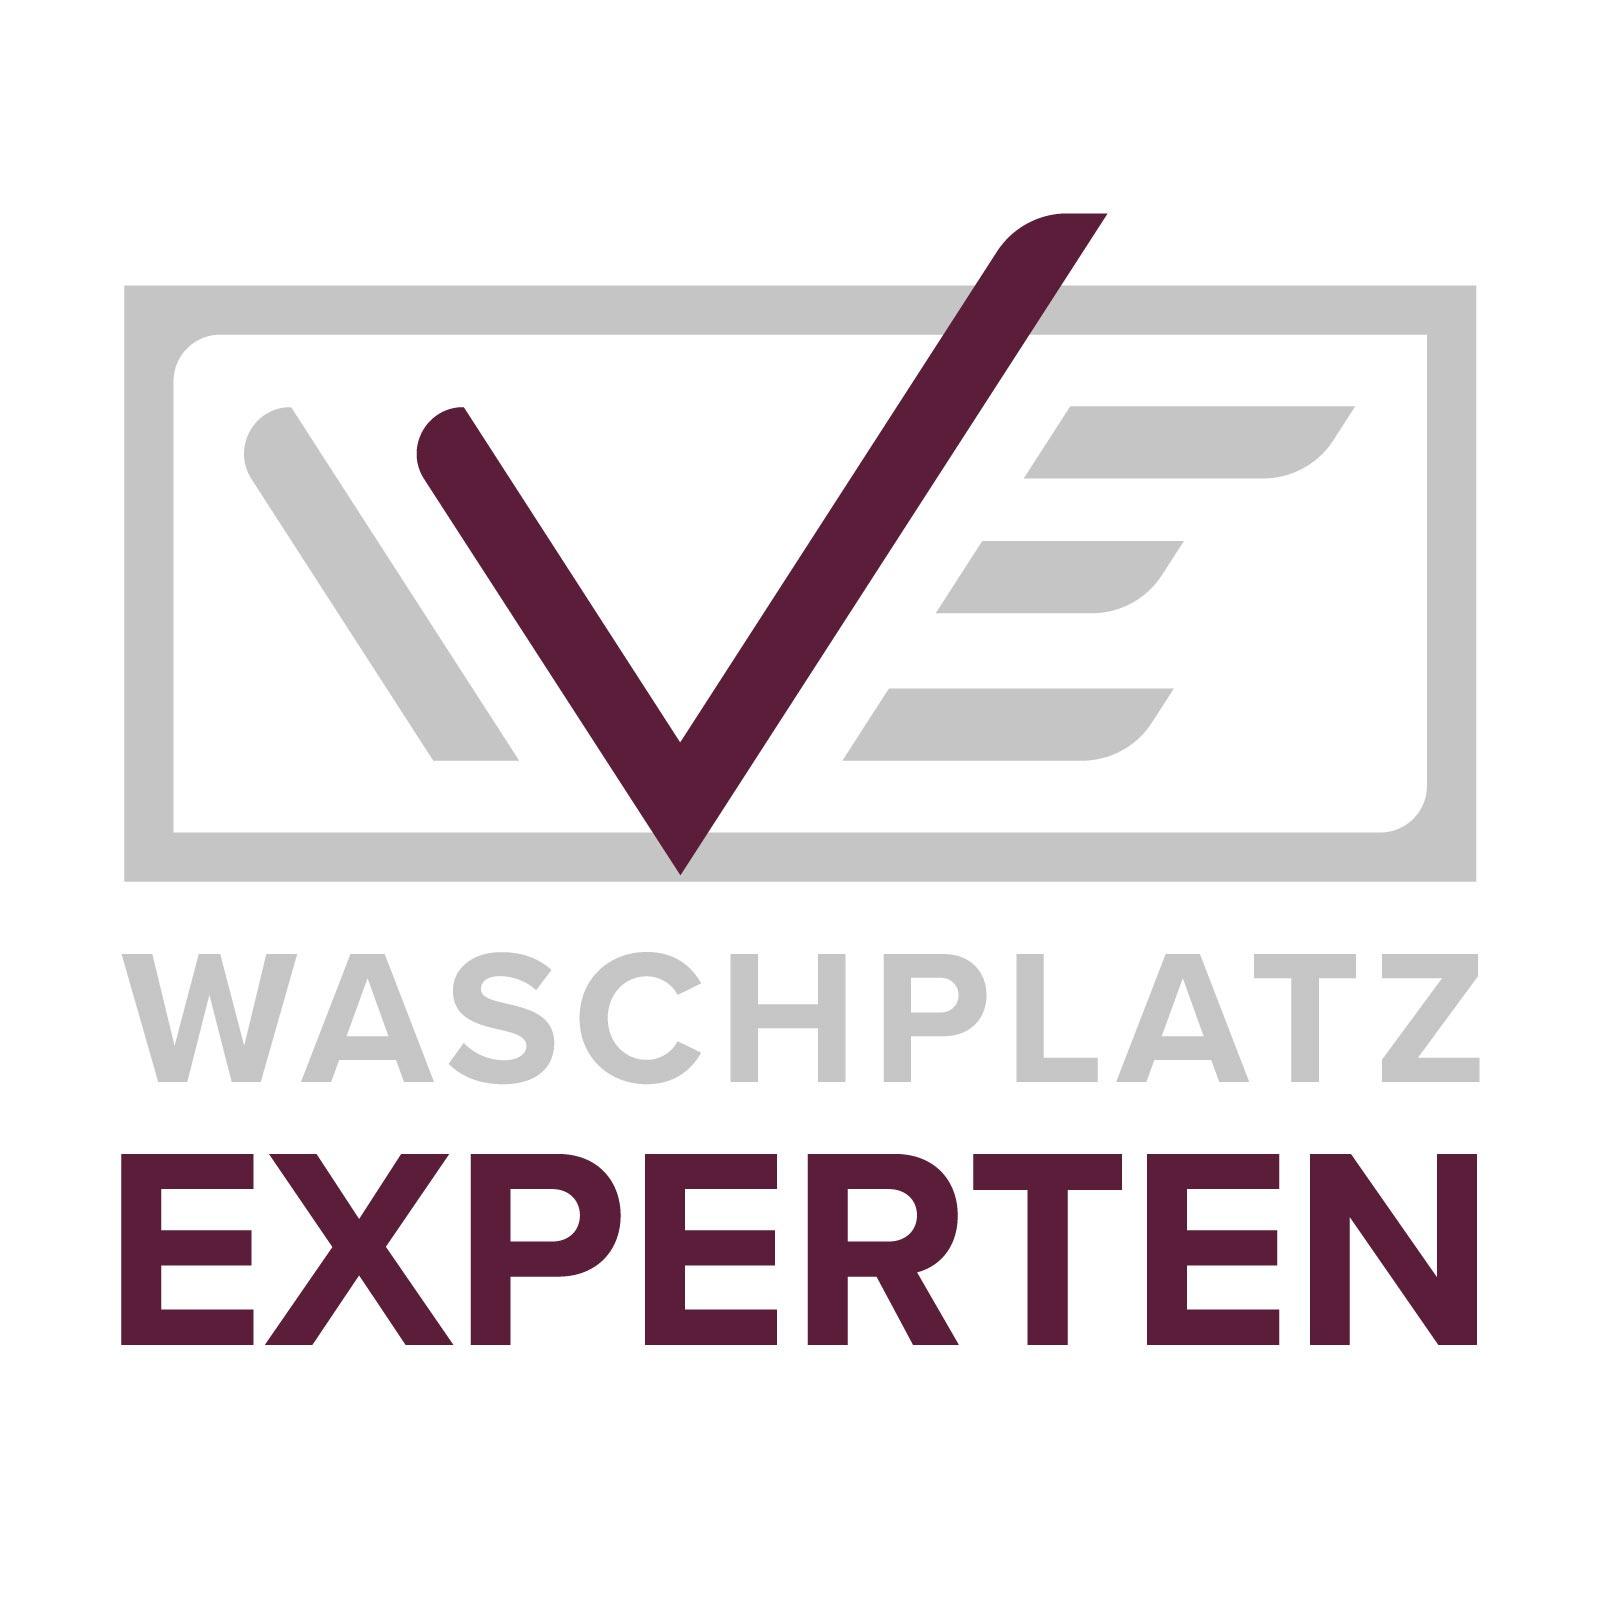 Waschplatz-Experten Zentrale & Mein Bad Direktvertrieb Logo